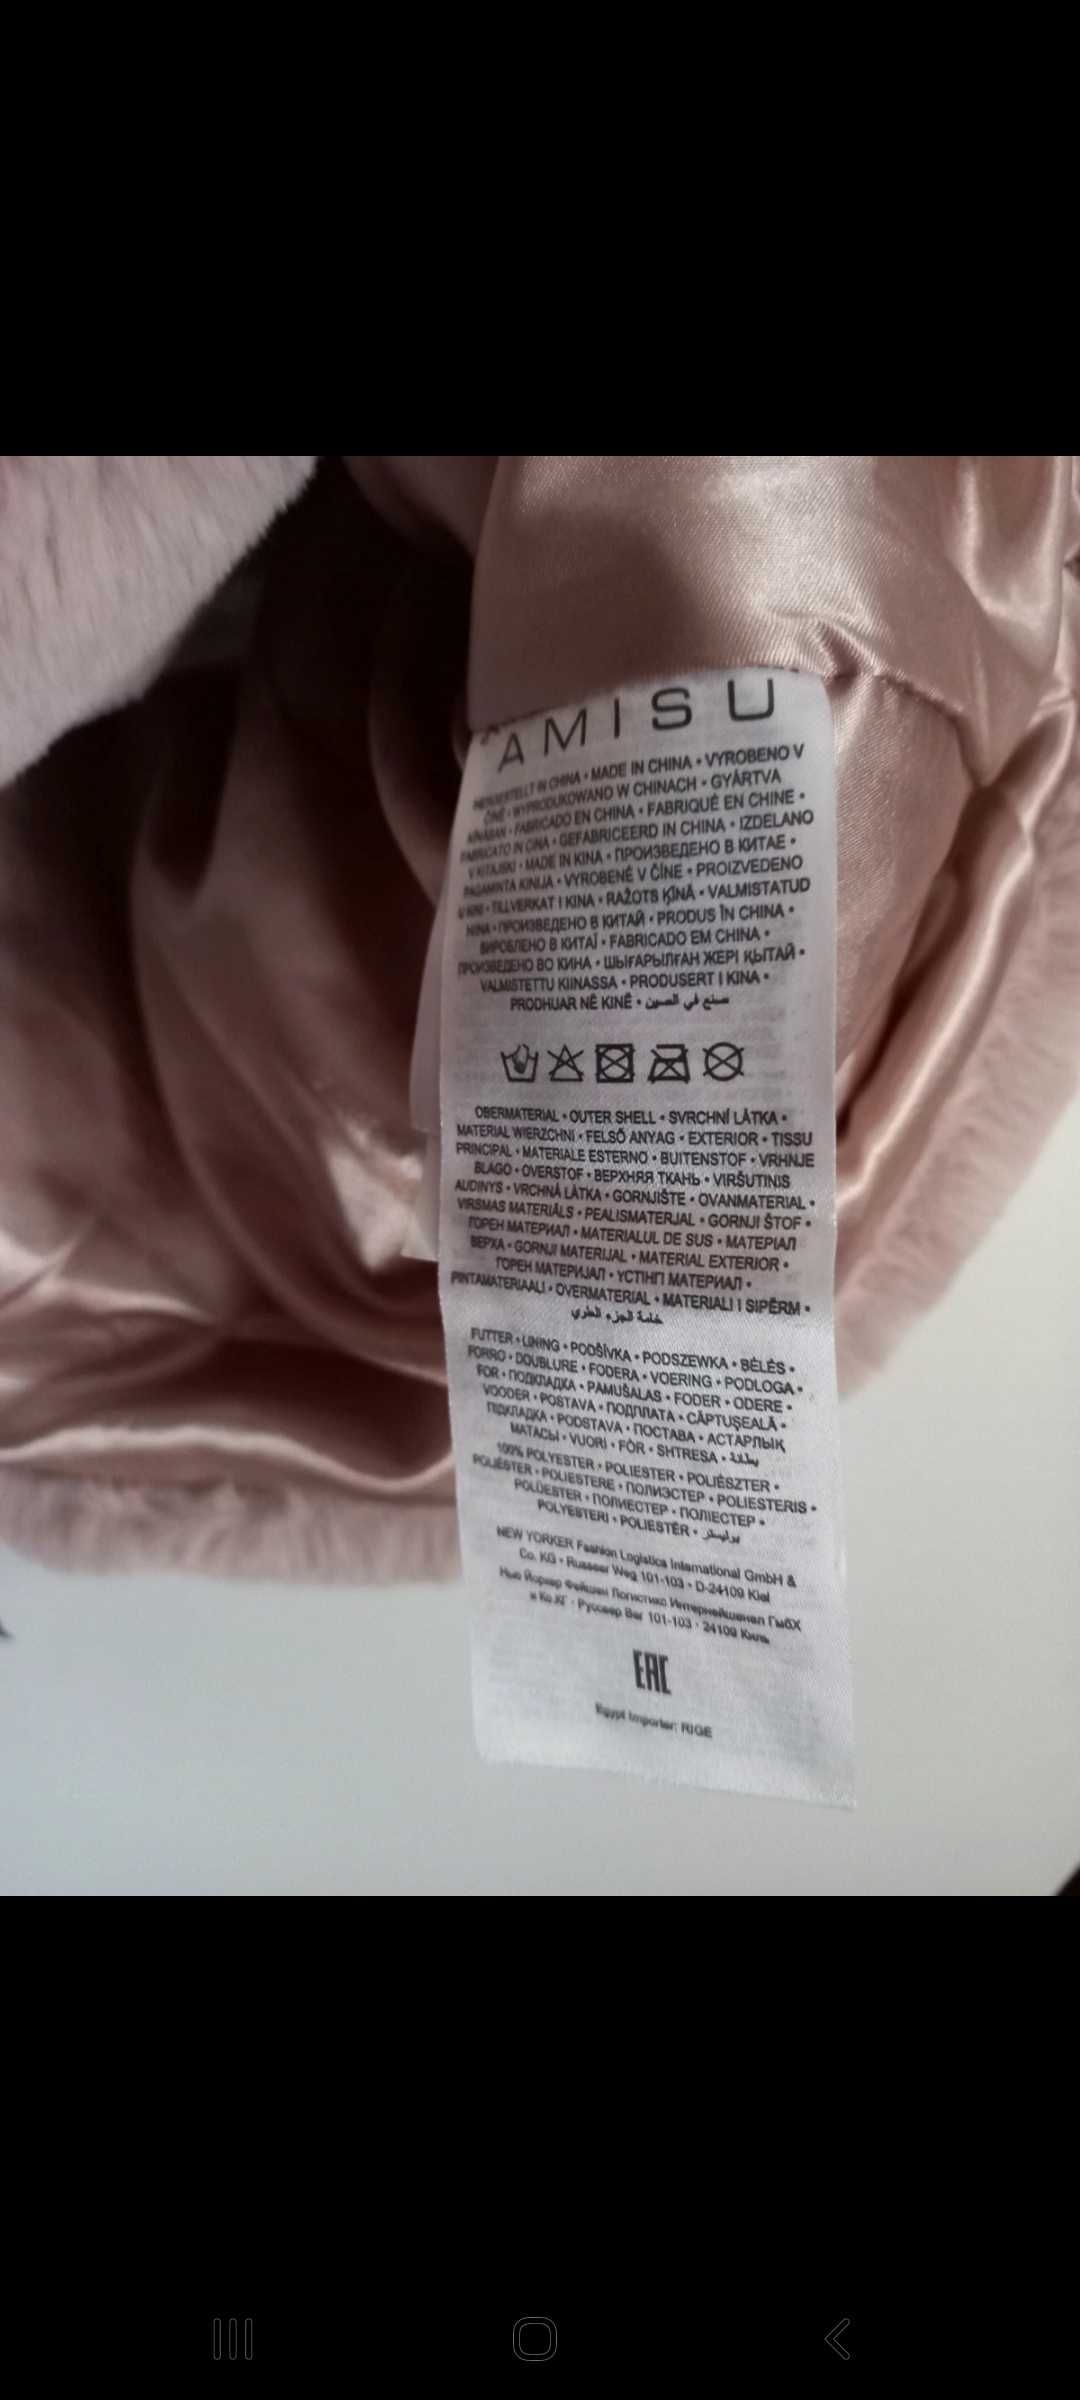 Casaco / colete de sra. de pêlo sintético - M - Amisu - New Yorker